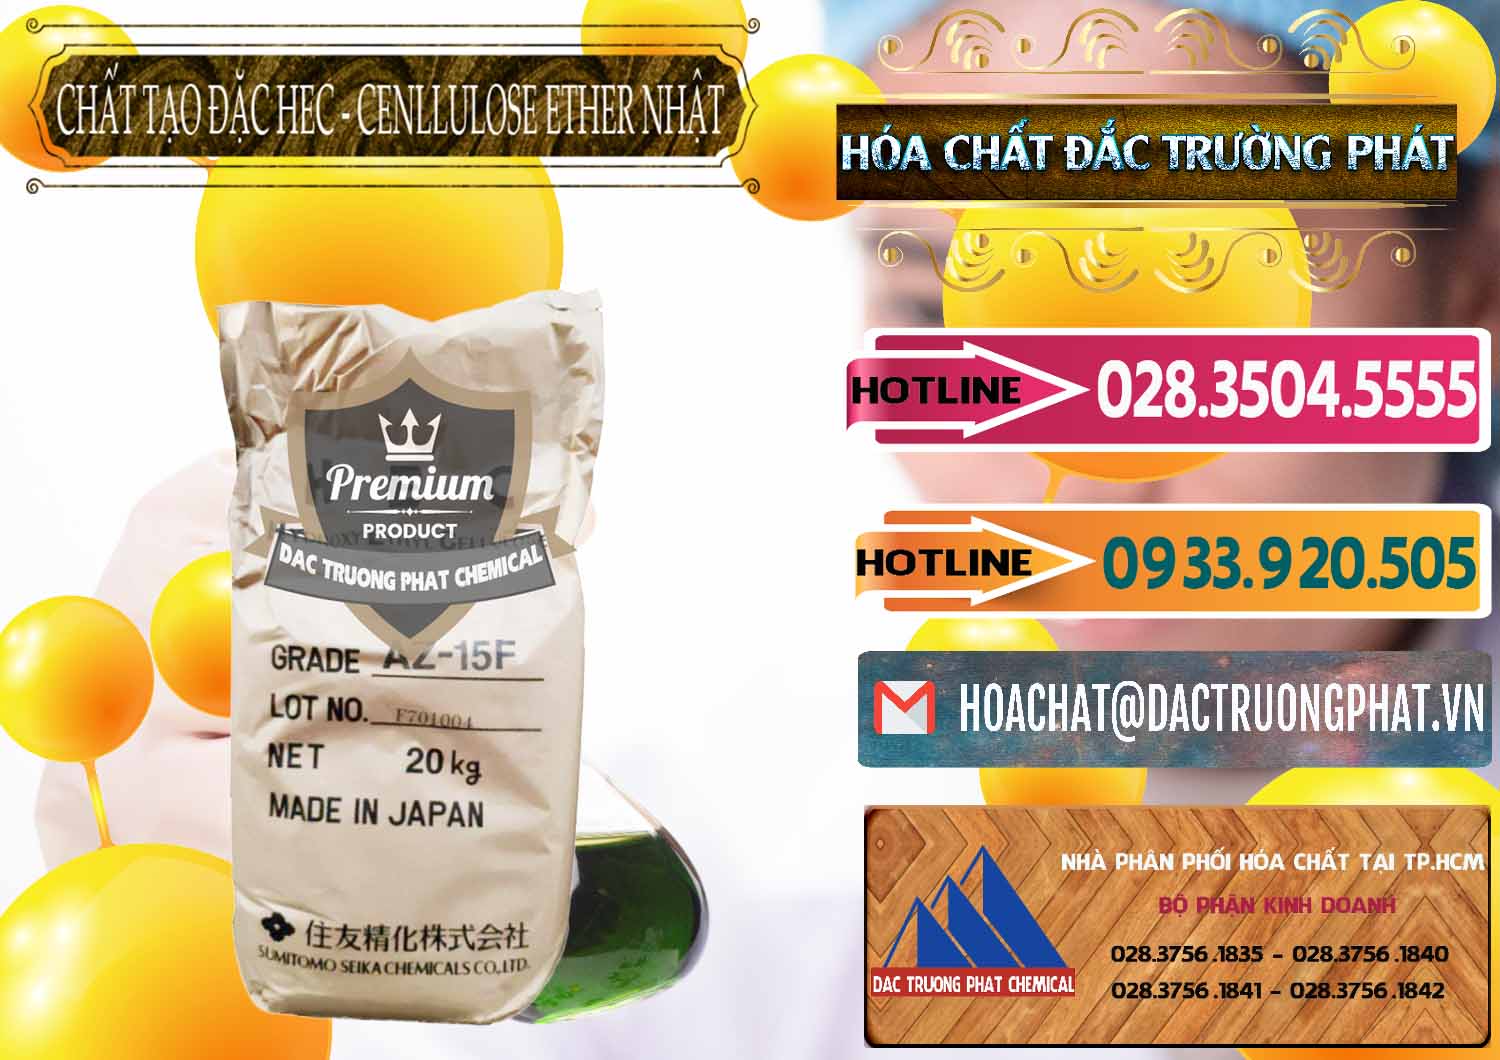 Cty chuyên bán _ cung ứng Chất Tạo Đặc Hec Mecellose – Cenllulose Ether Nhật Bản Japan - 0367 - Đơn vị chuyên nhập khẩu _ cung cấp hóa chất tại TP.HCM - dactruongphat.vn